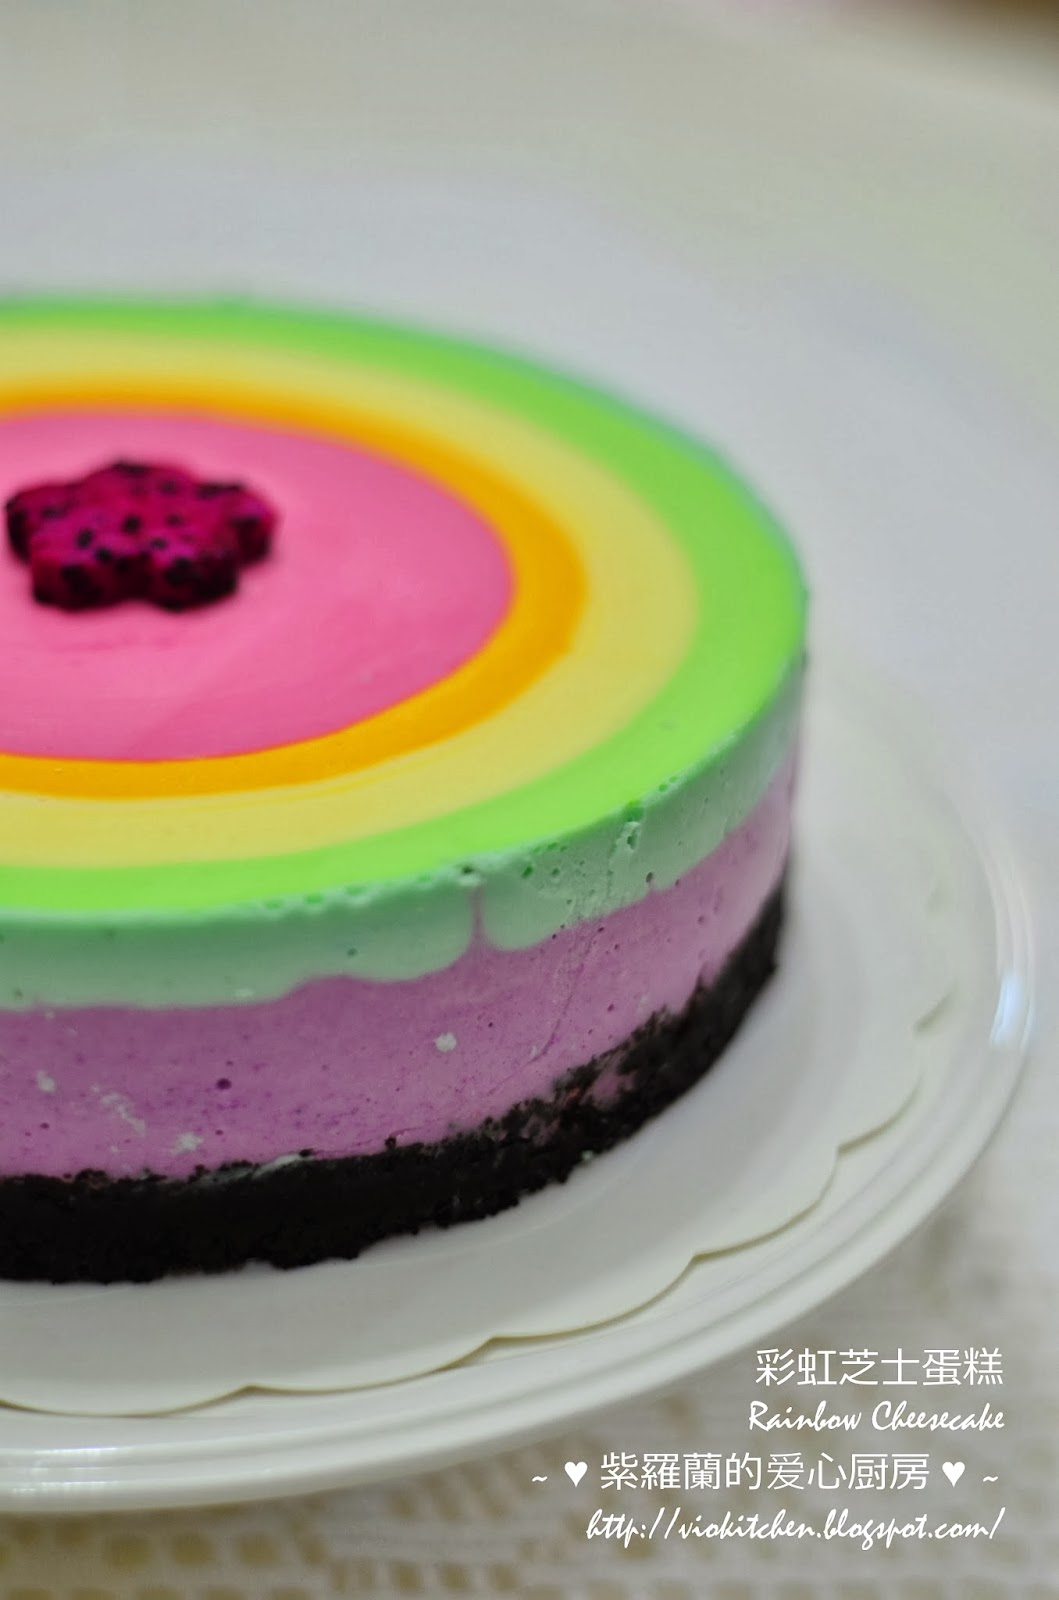 彩虹慕斯蛋糕的做法_【图解】彩虹慕斯蛋糕怎么做如何做好吃_彩虹慕斯蛋糕家常做法大全_梦洋君_豆果美食